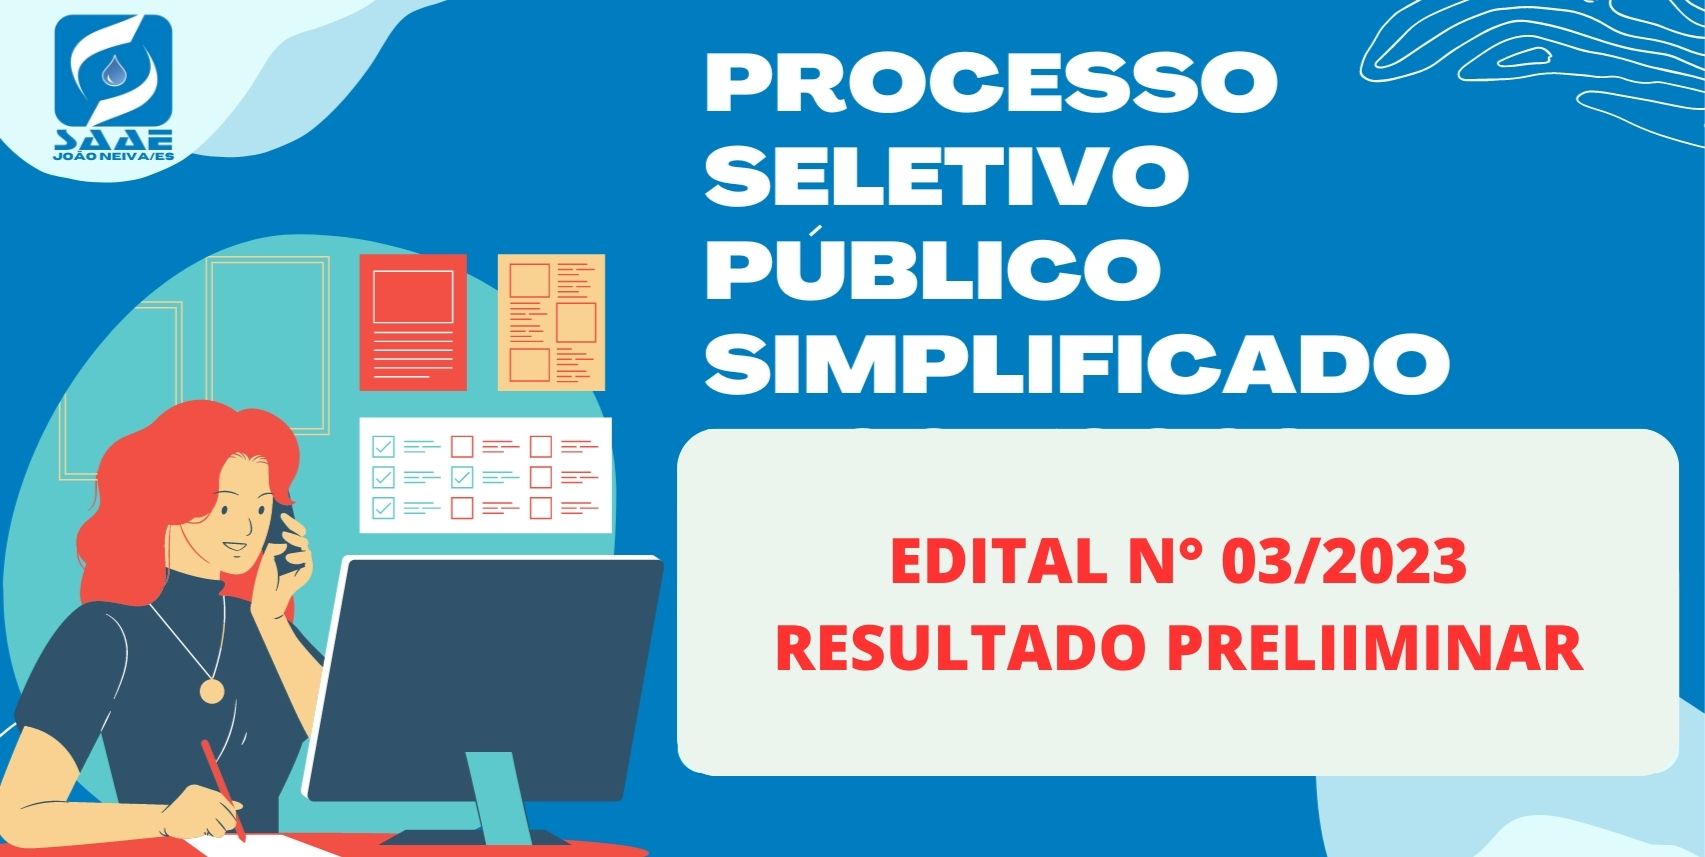 RESULTADO PRELIMINAR - PROCESSO SELETIVO PÚBLICO SIMPLIFICADO Nº 003/2023